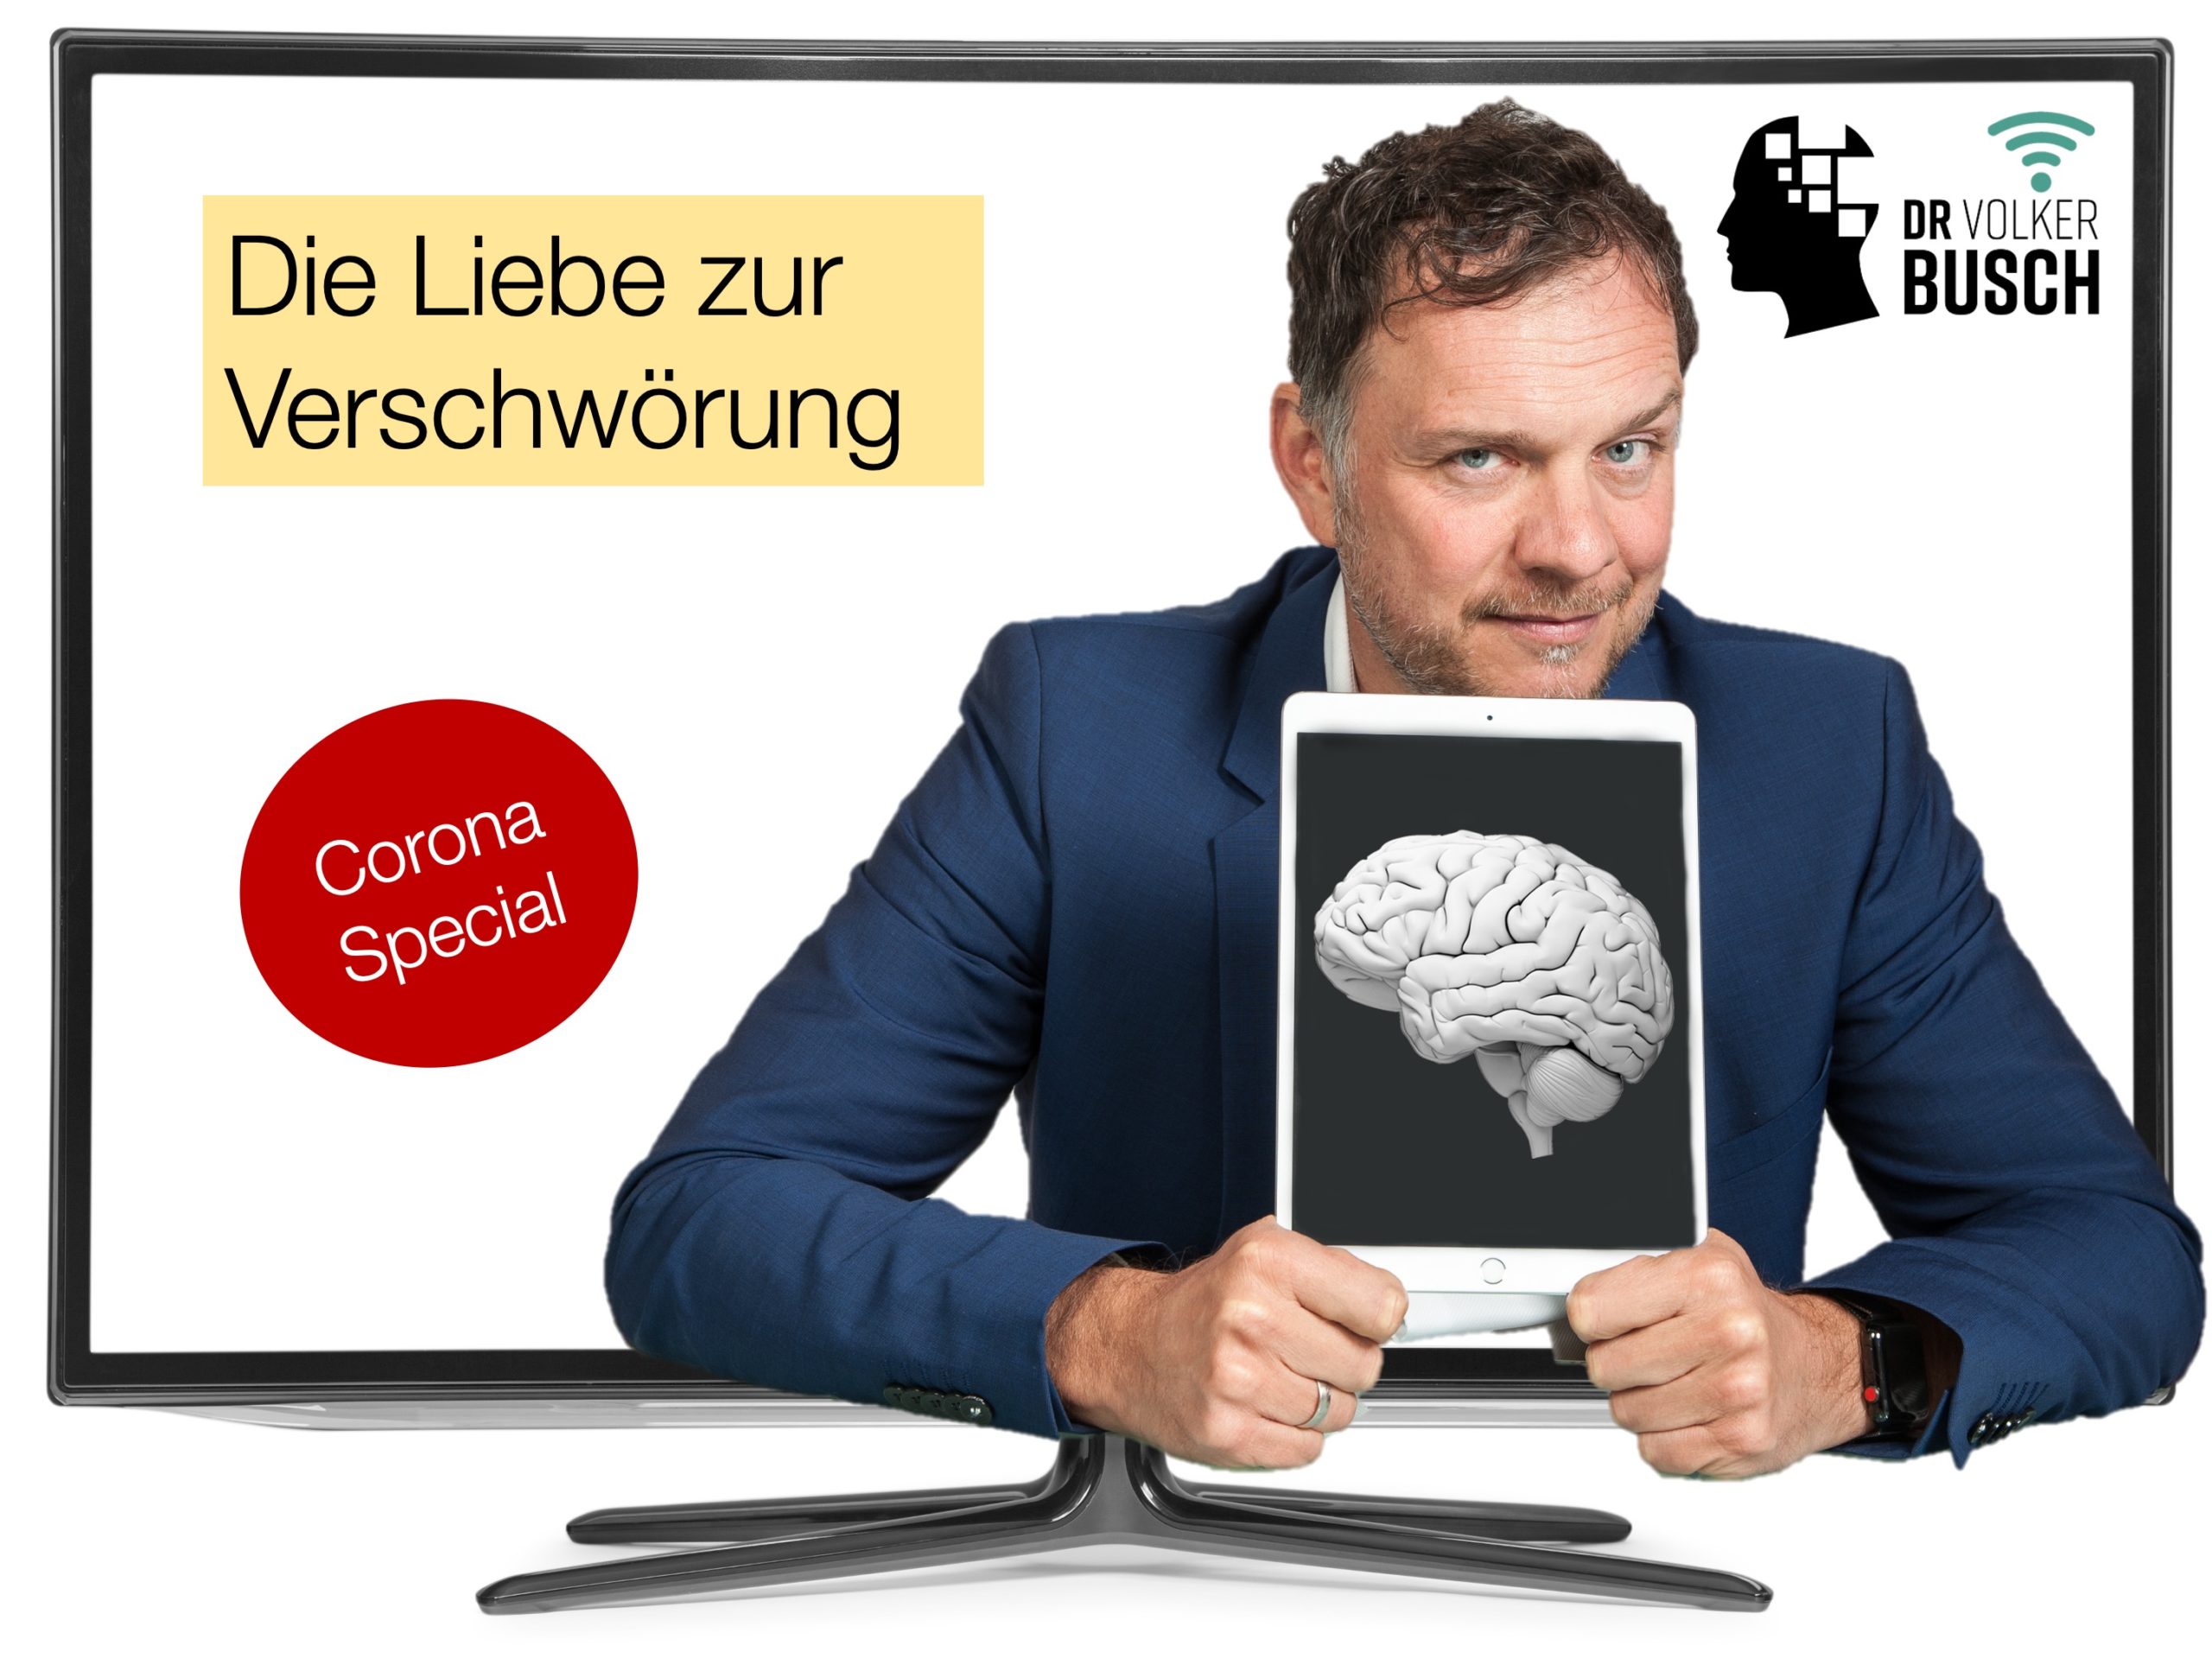 Corona Special: Die Liebe zur Verschwörung - Dr. Volker Busch